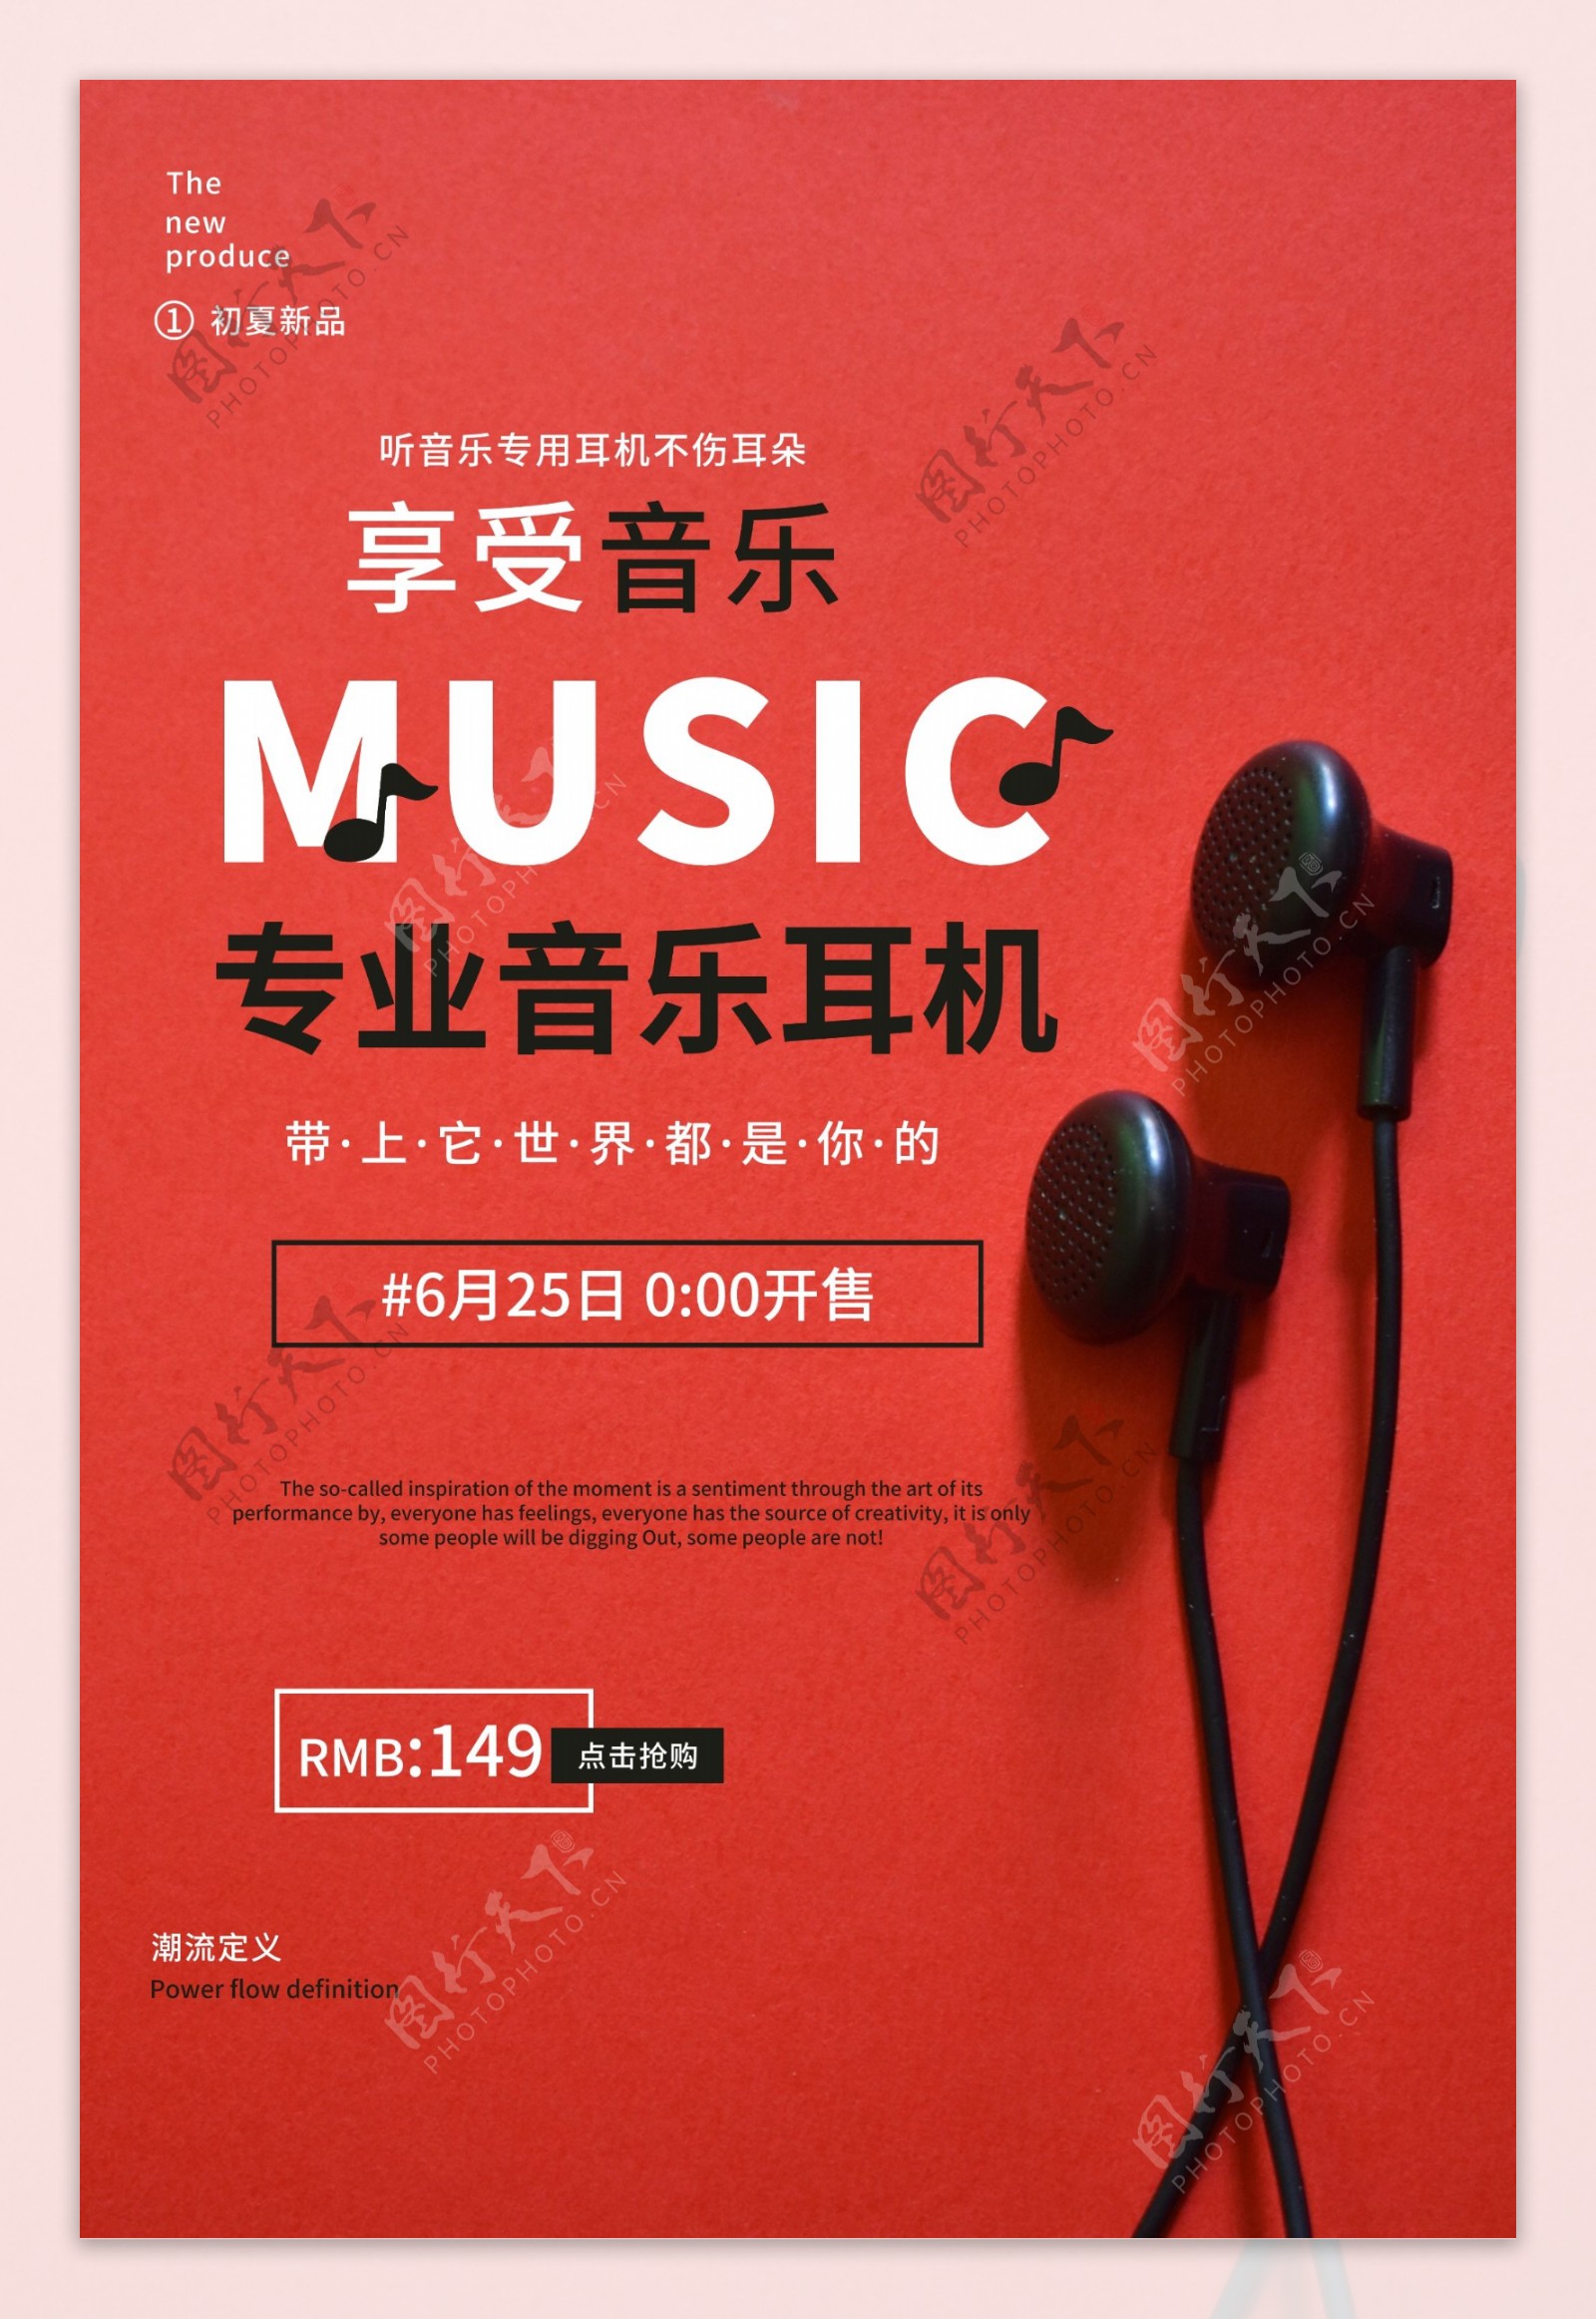 耳机专业音乐活动宣传海报素材